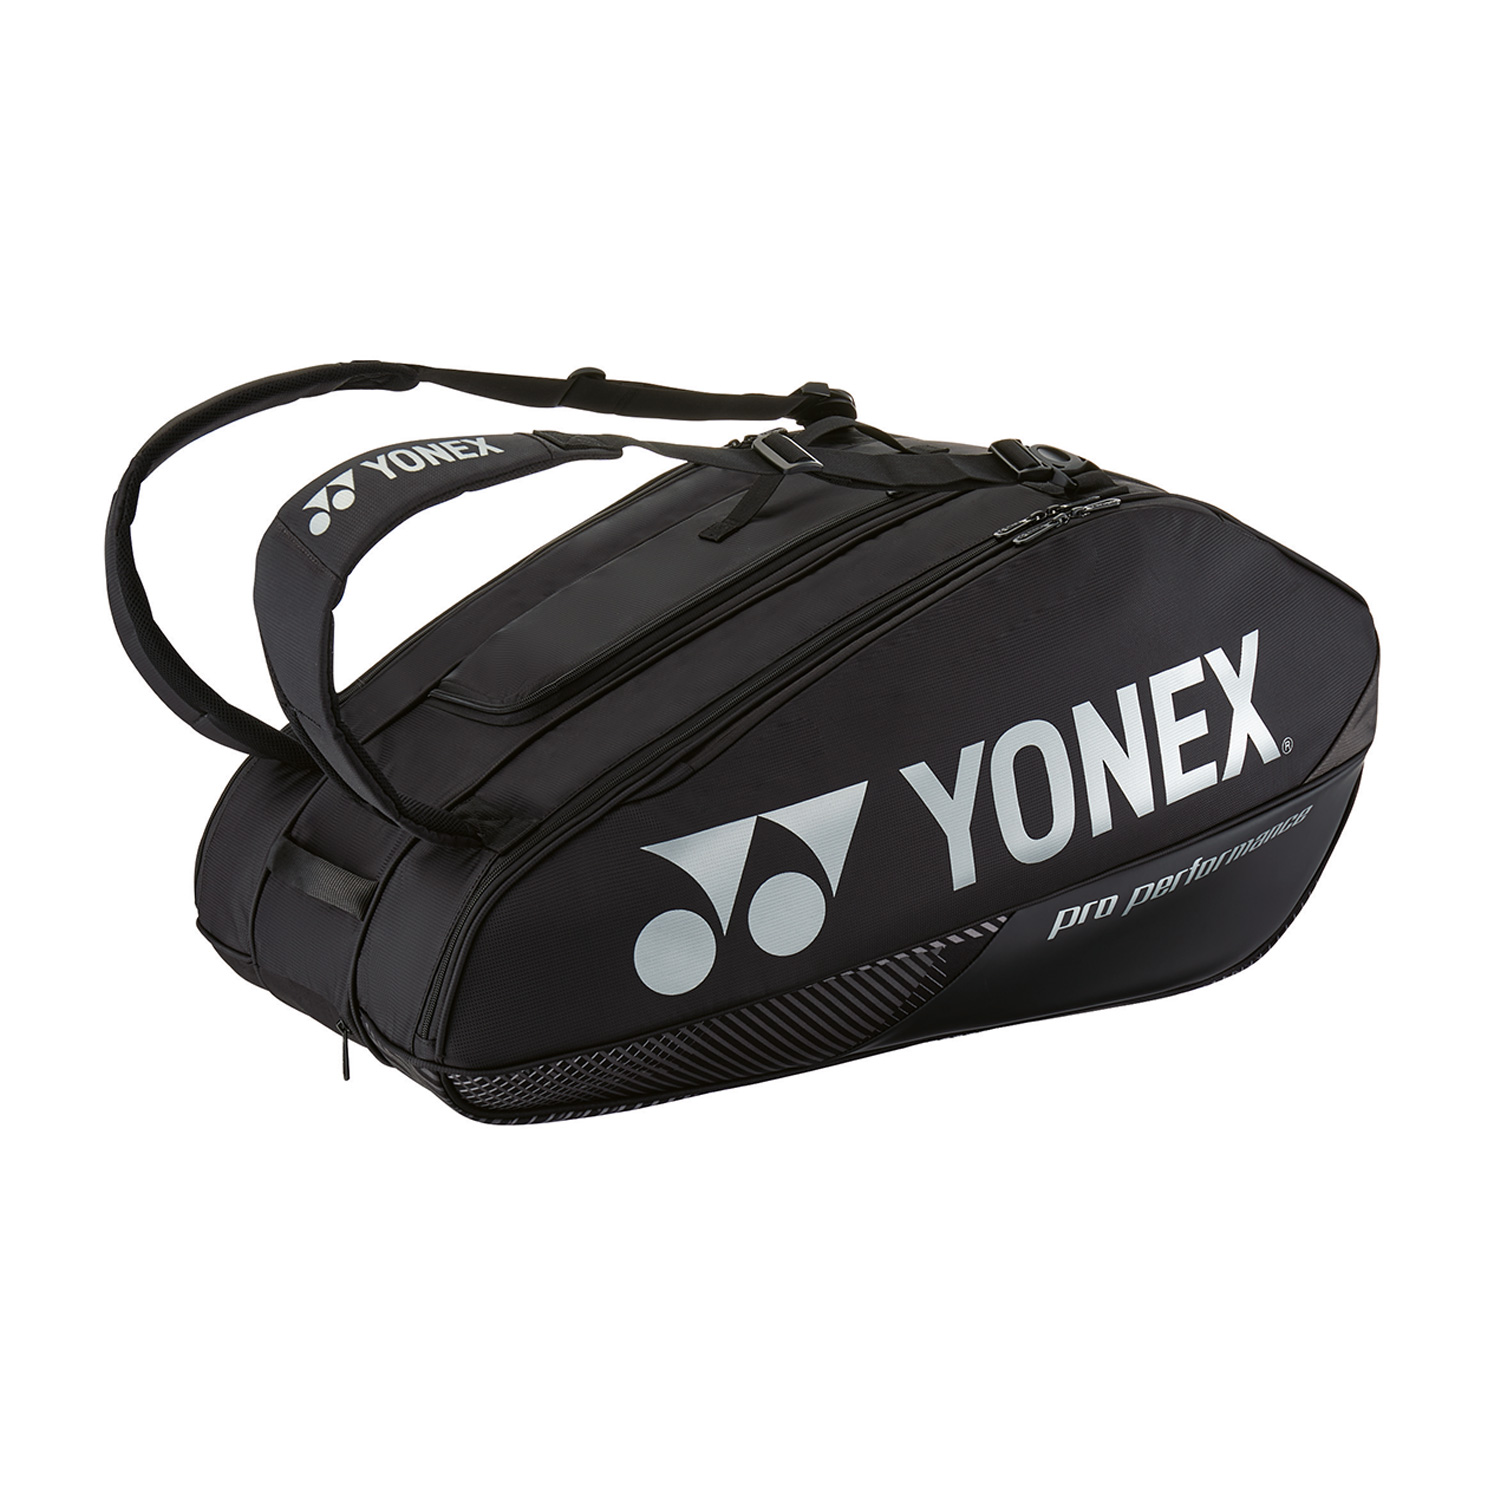 Yonex Bag Pro x 9 Borsa - Black